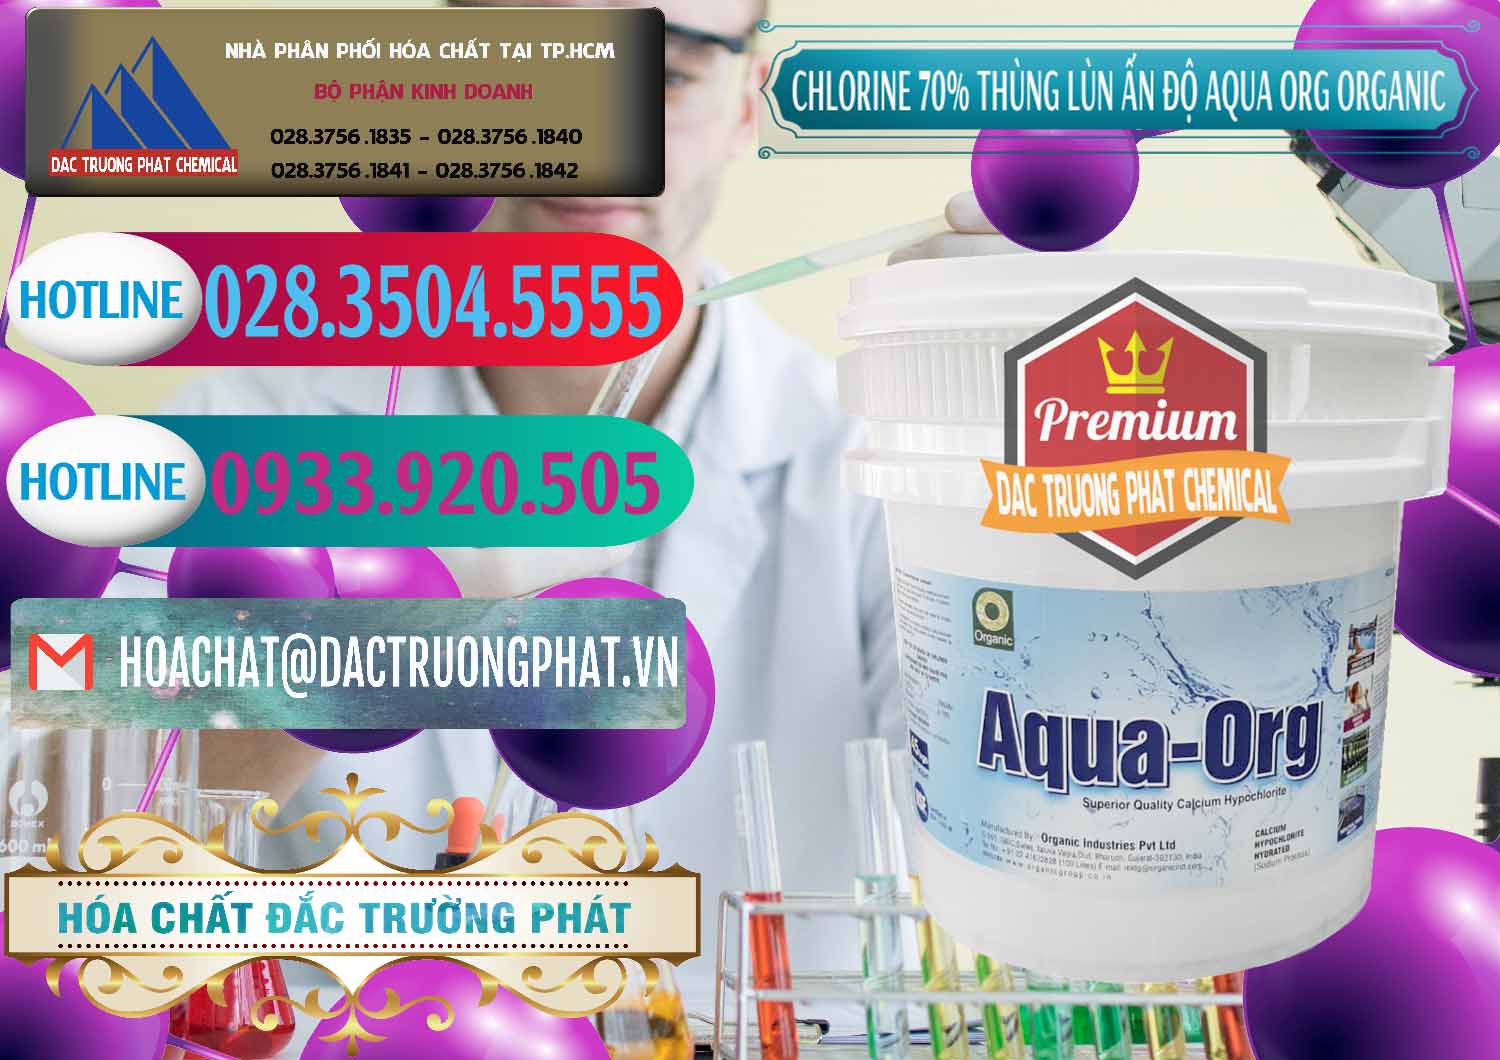 Cung cấp & bán Chlorine – Clorin 70% Thùng Lùn Ấn Độ Aqua ORG Organic India - 0212 - Chuyên kinh doanh và phân phối hóa chất tại TP.HCM - truongphat.vn